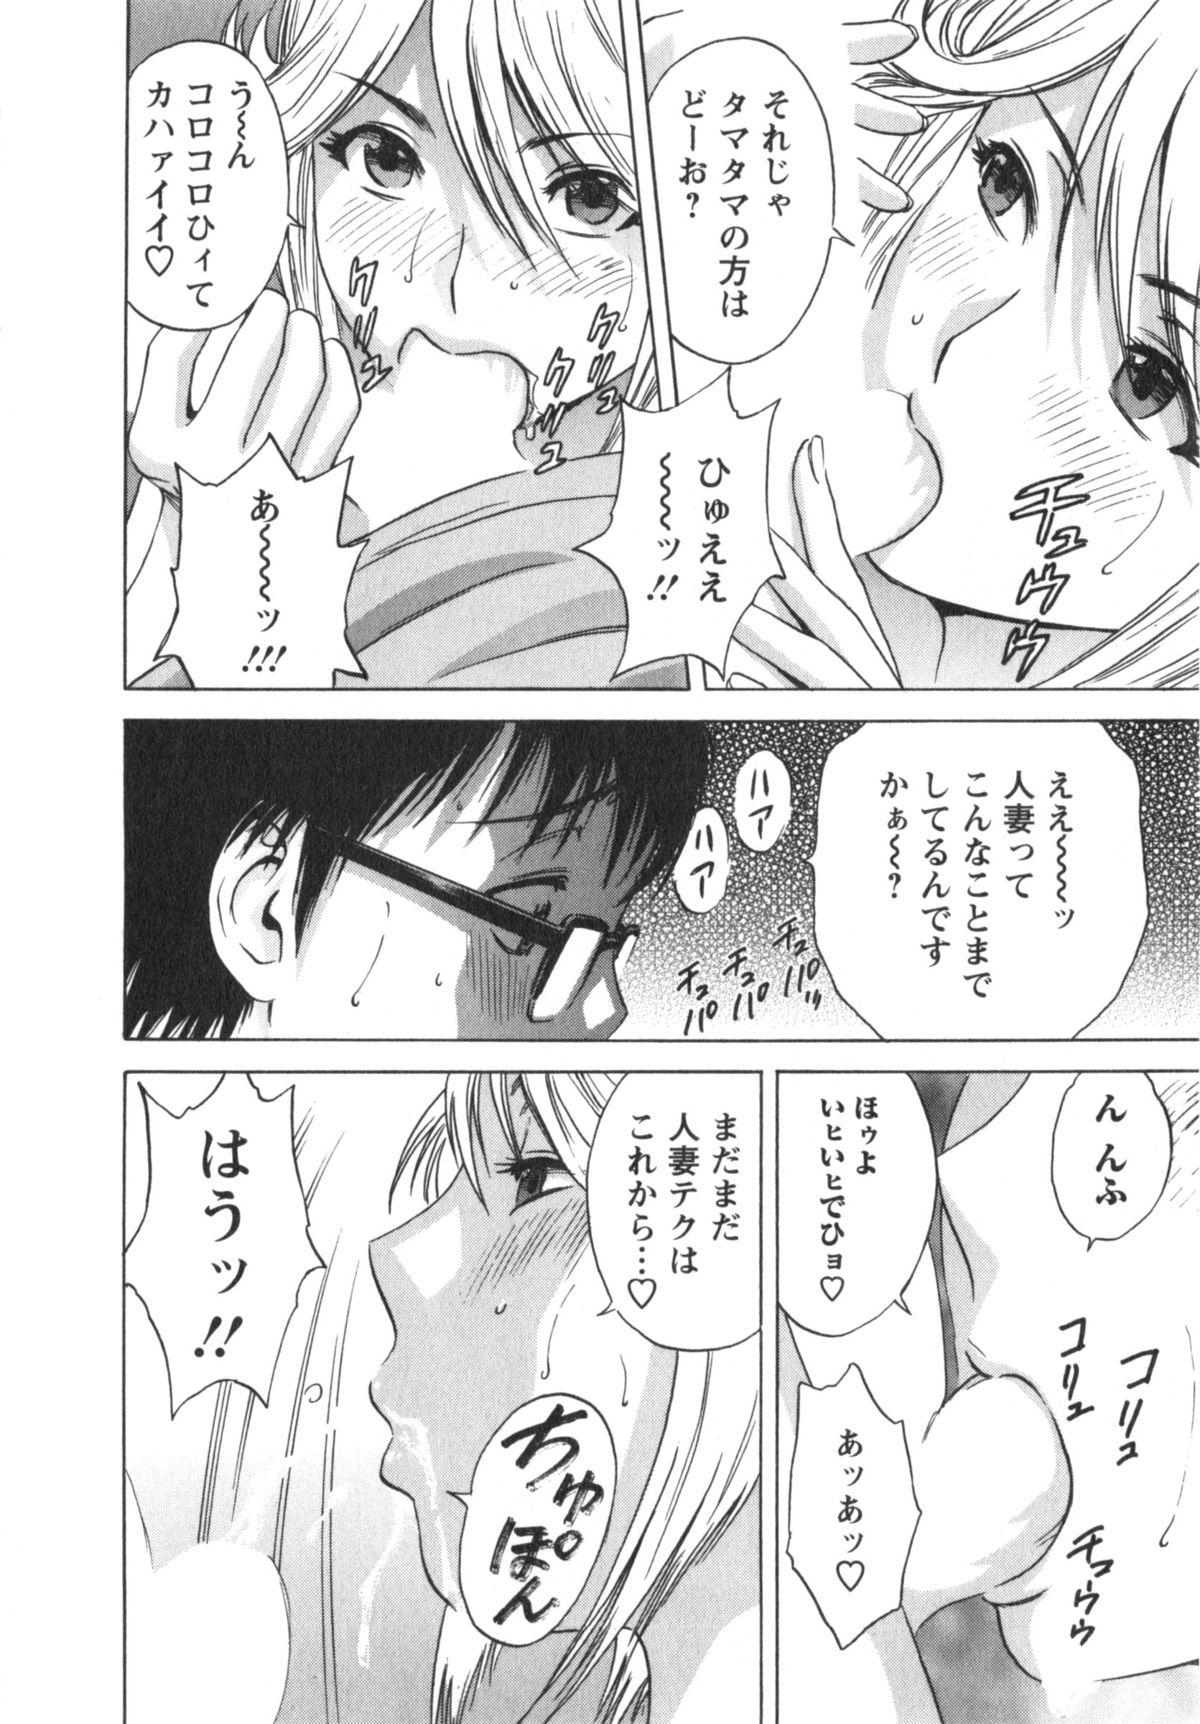 Manga no youna Hitozuma to no Hibi - Days with Married Women such as Comics. 34